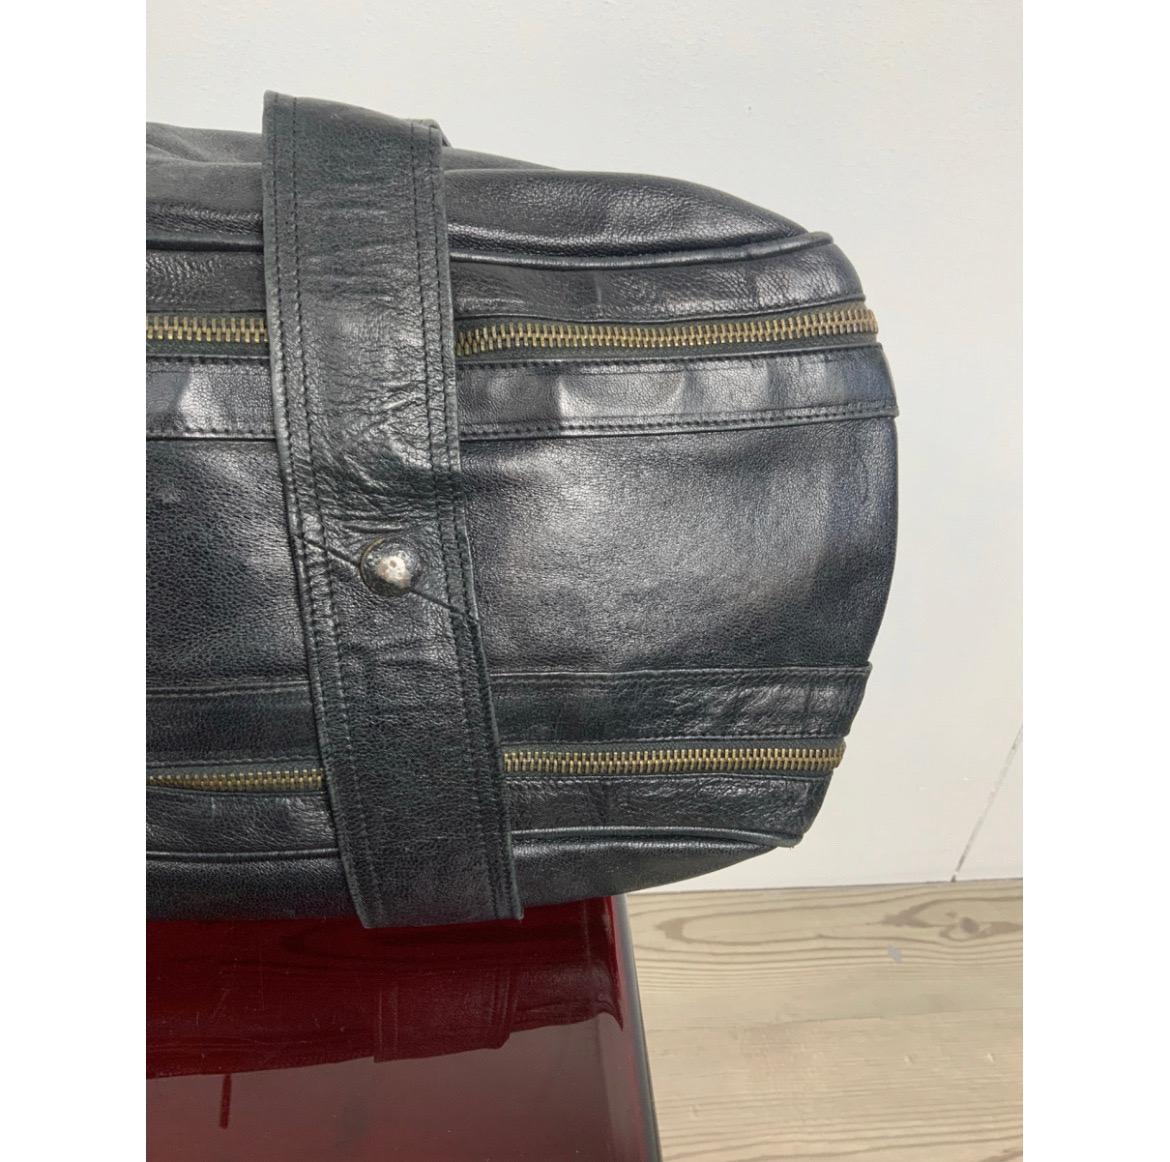 Bottega Veneta Handbag Leather in black 1